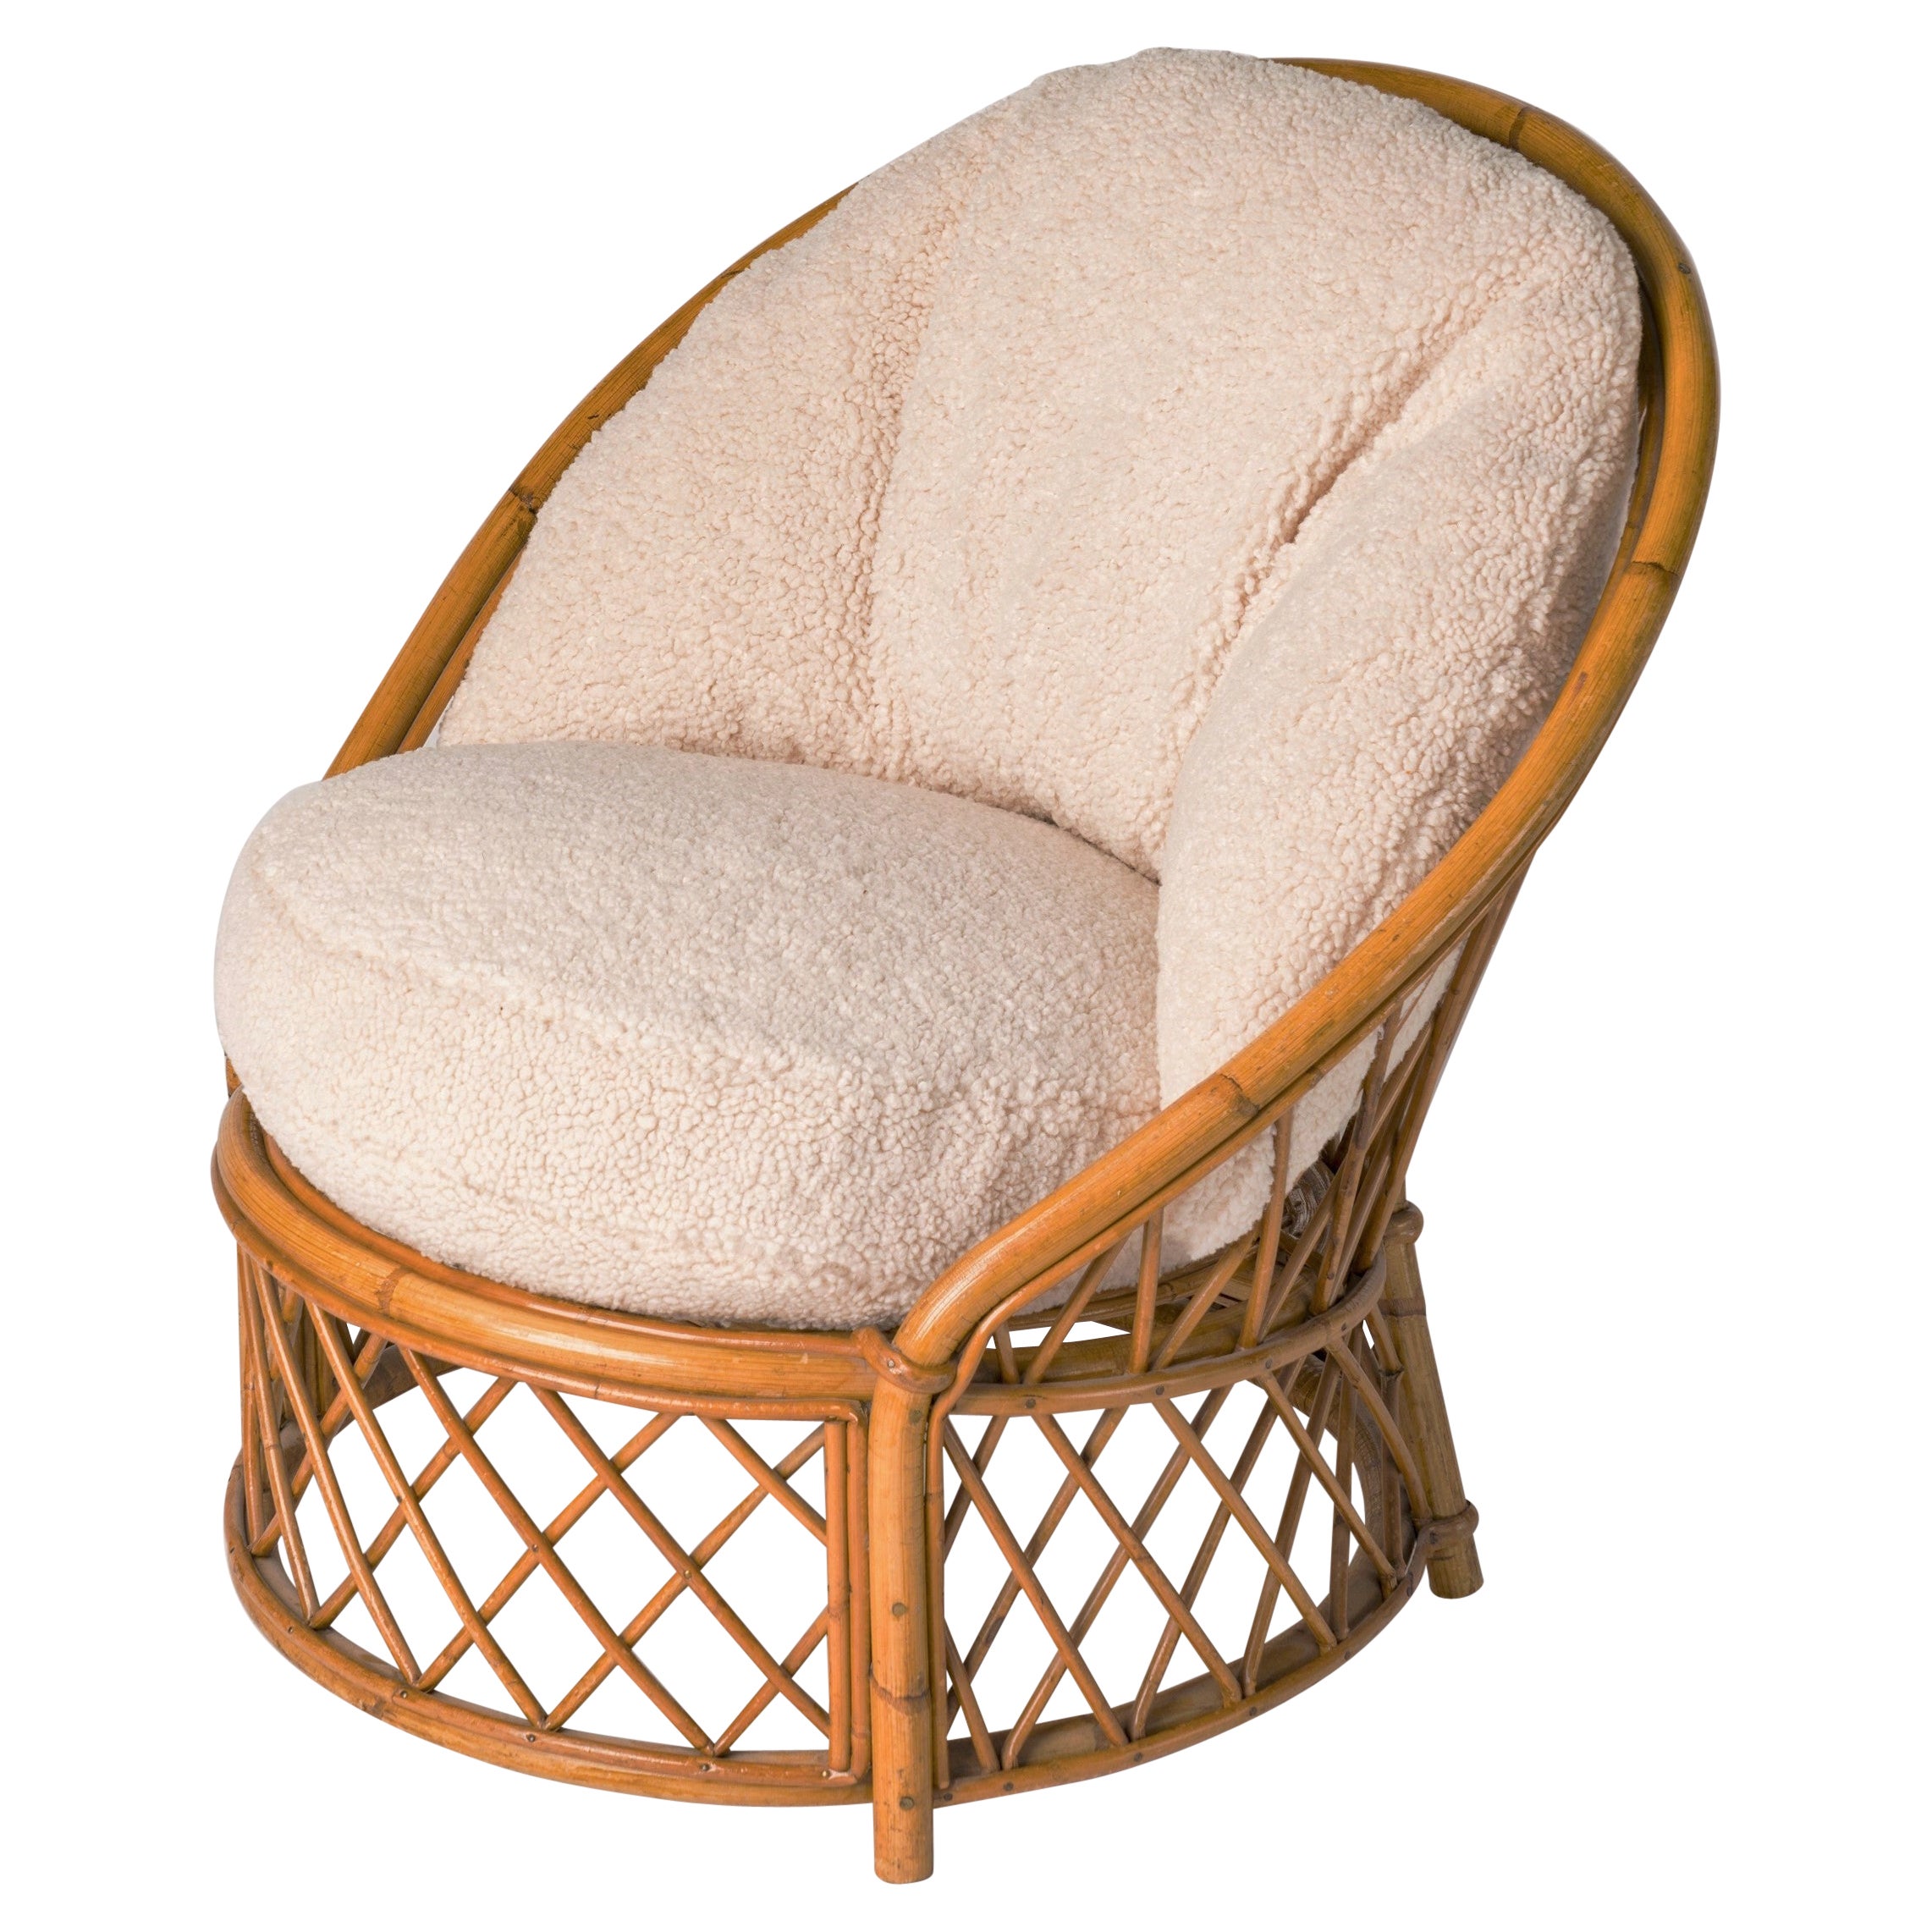 Signed Bergère Rattan Chair by Audoux Minnet w. Cream Bouclé Cushions, France